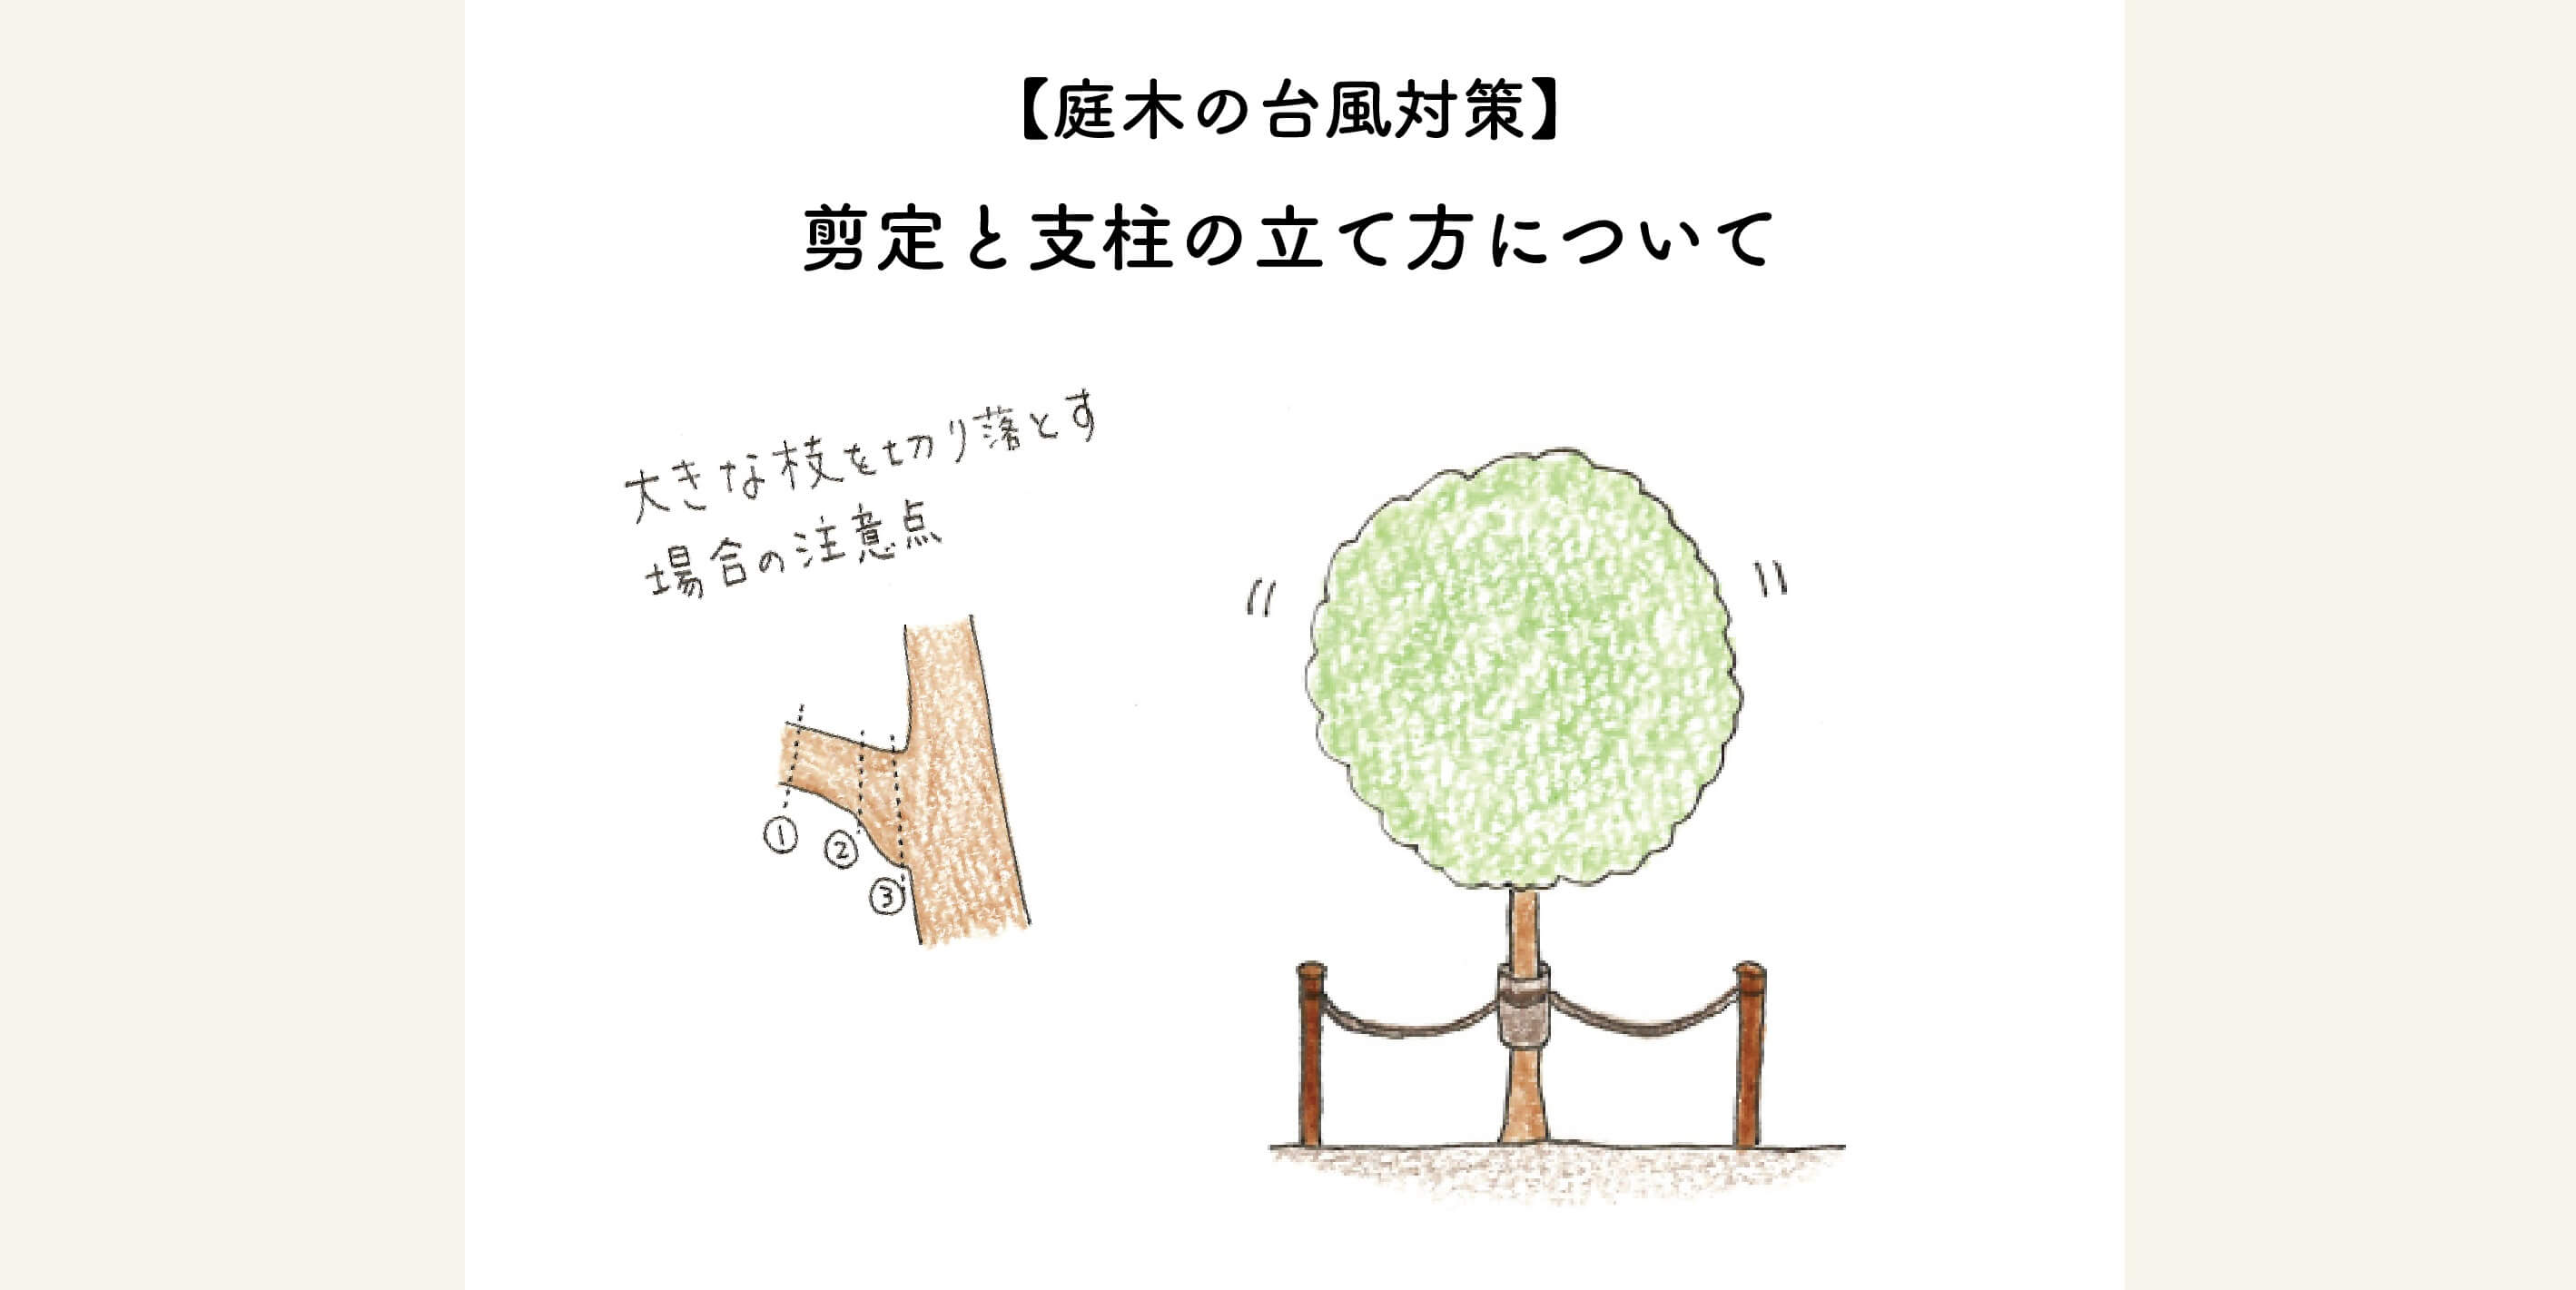 【庭木の台風対策】剪定と支柱の立て方について